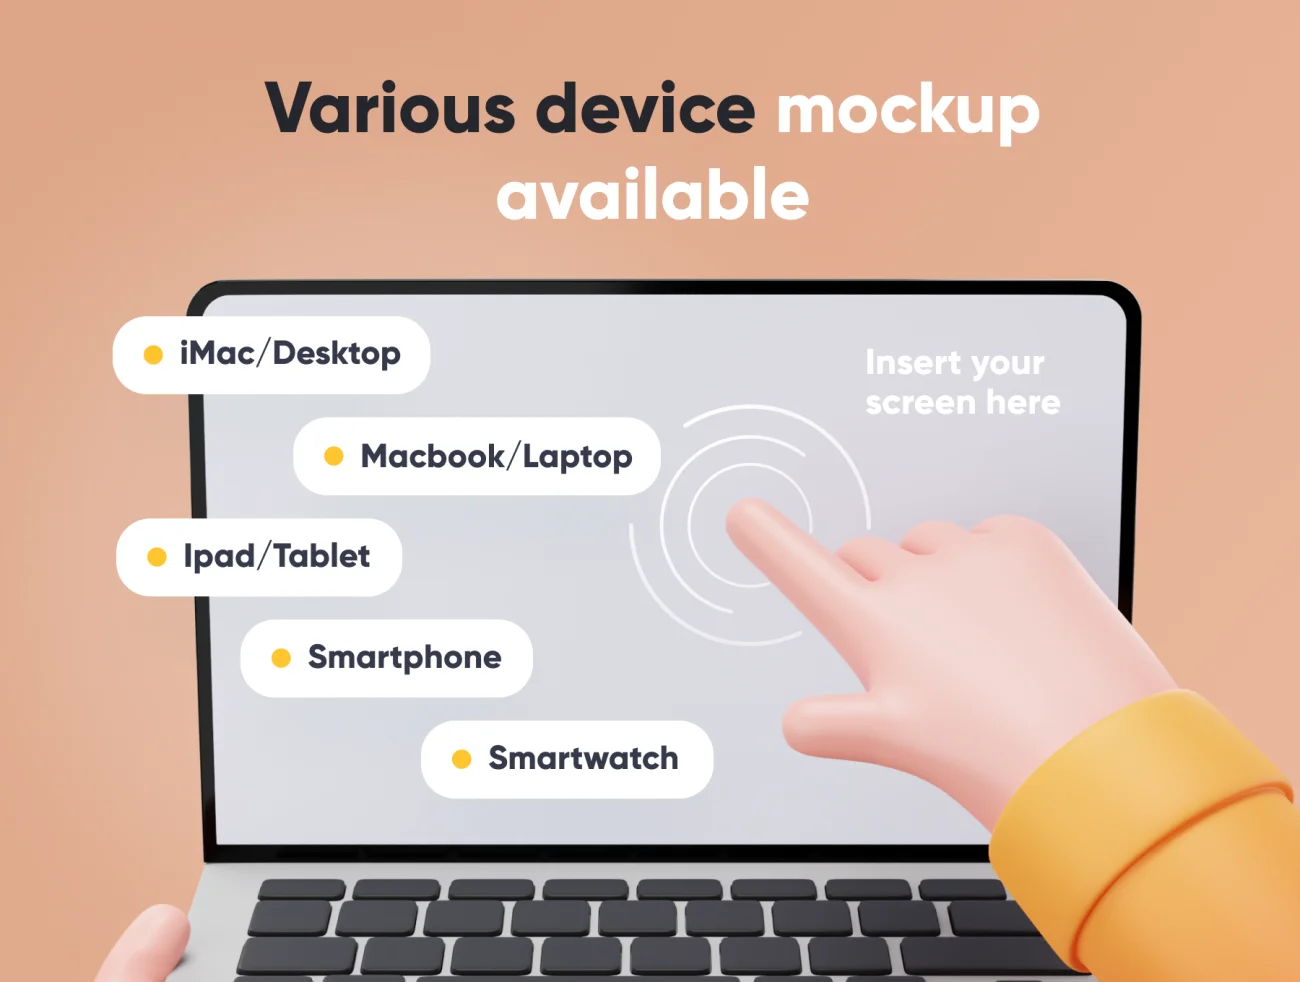 15款可爱3D手持电脑手机手表智能样机 Mockupy - Cute 3D Device Mockup-产品展示、优雅样机、创意展示、样机、苹果设备-到位啦UI